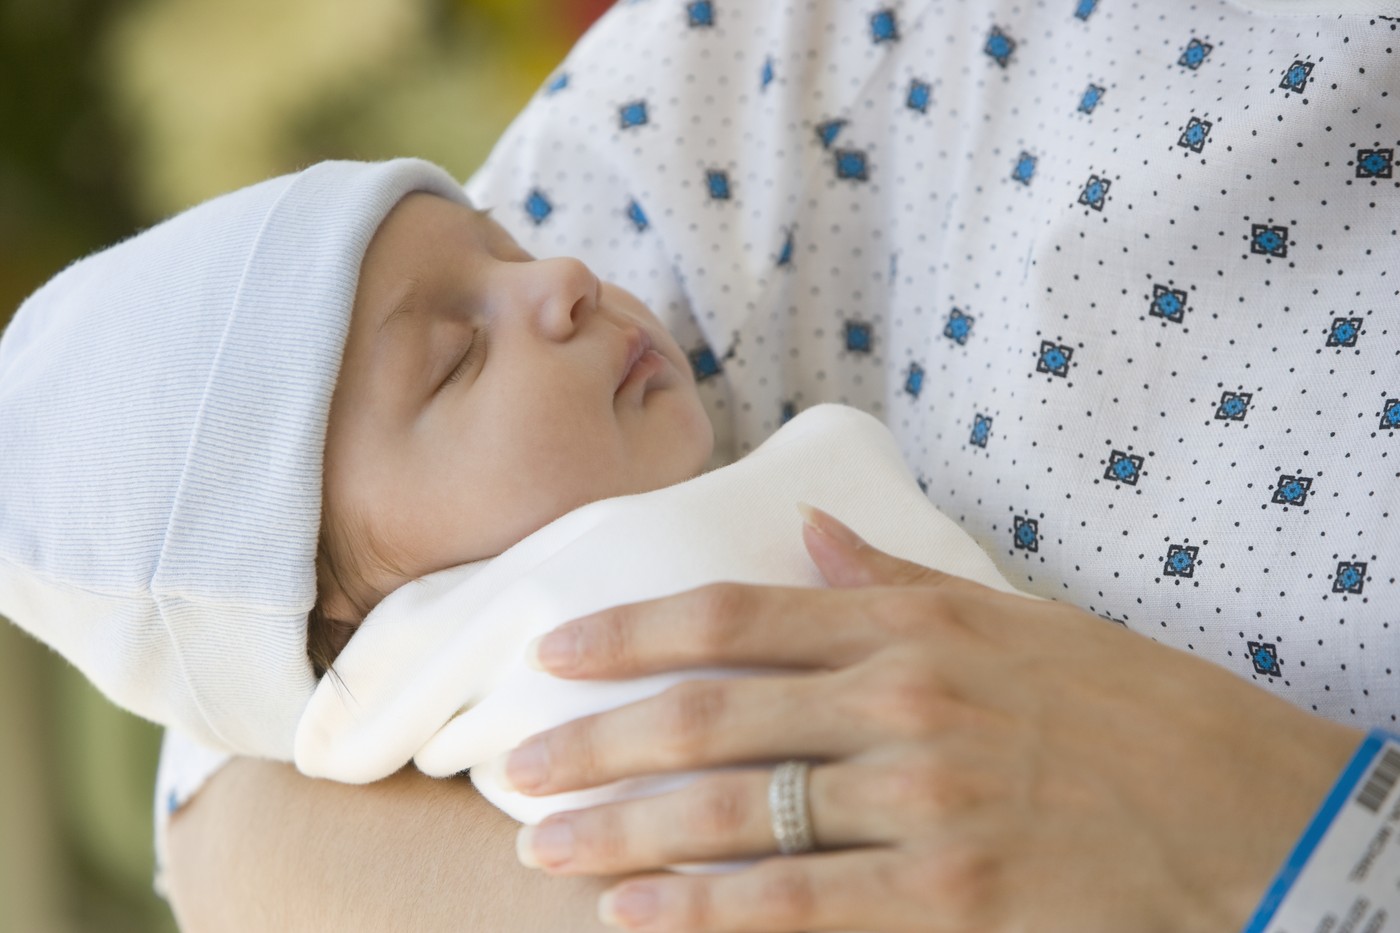 Izjemen dosežek: Velika novost za novorojenčke pri nas